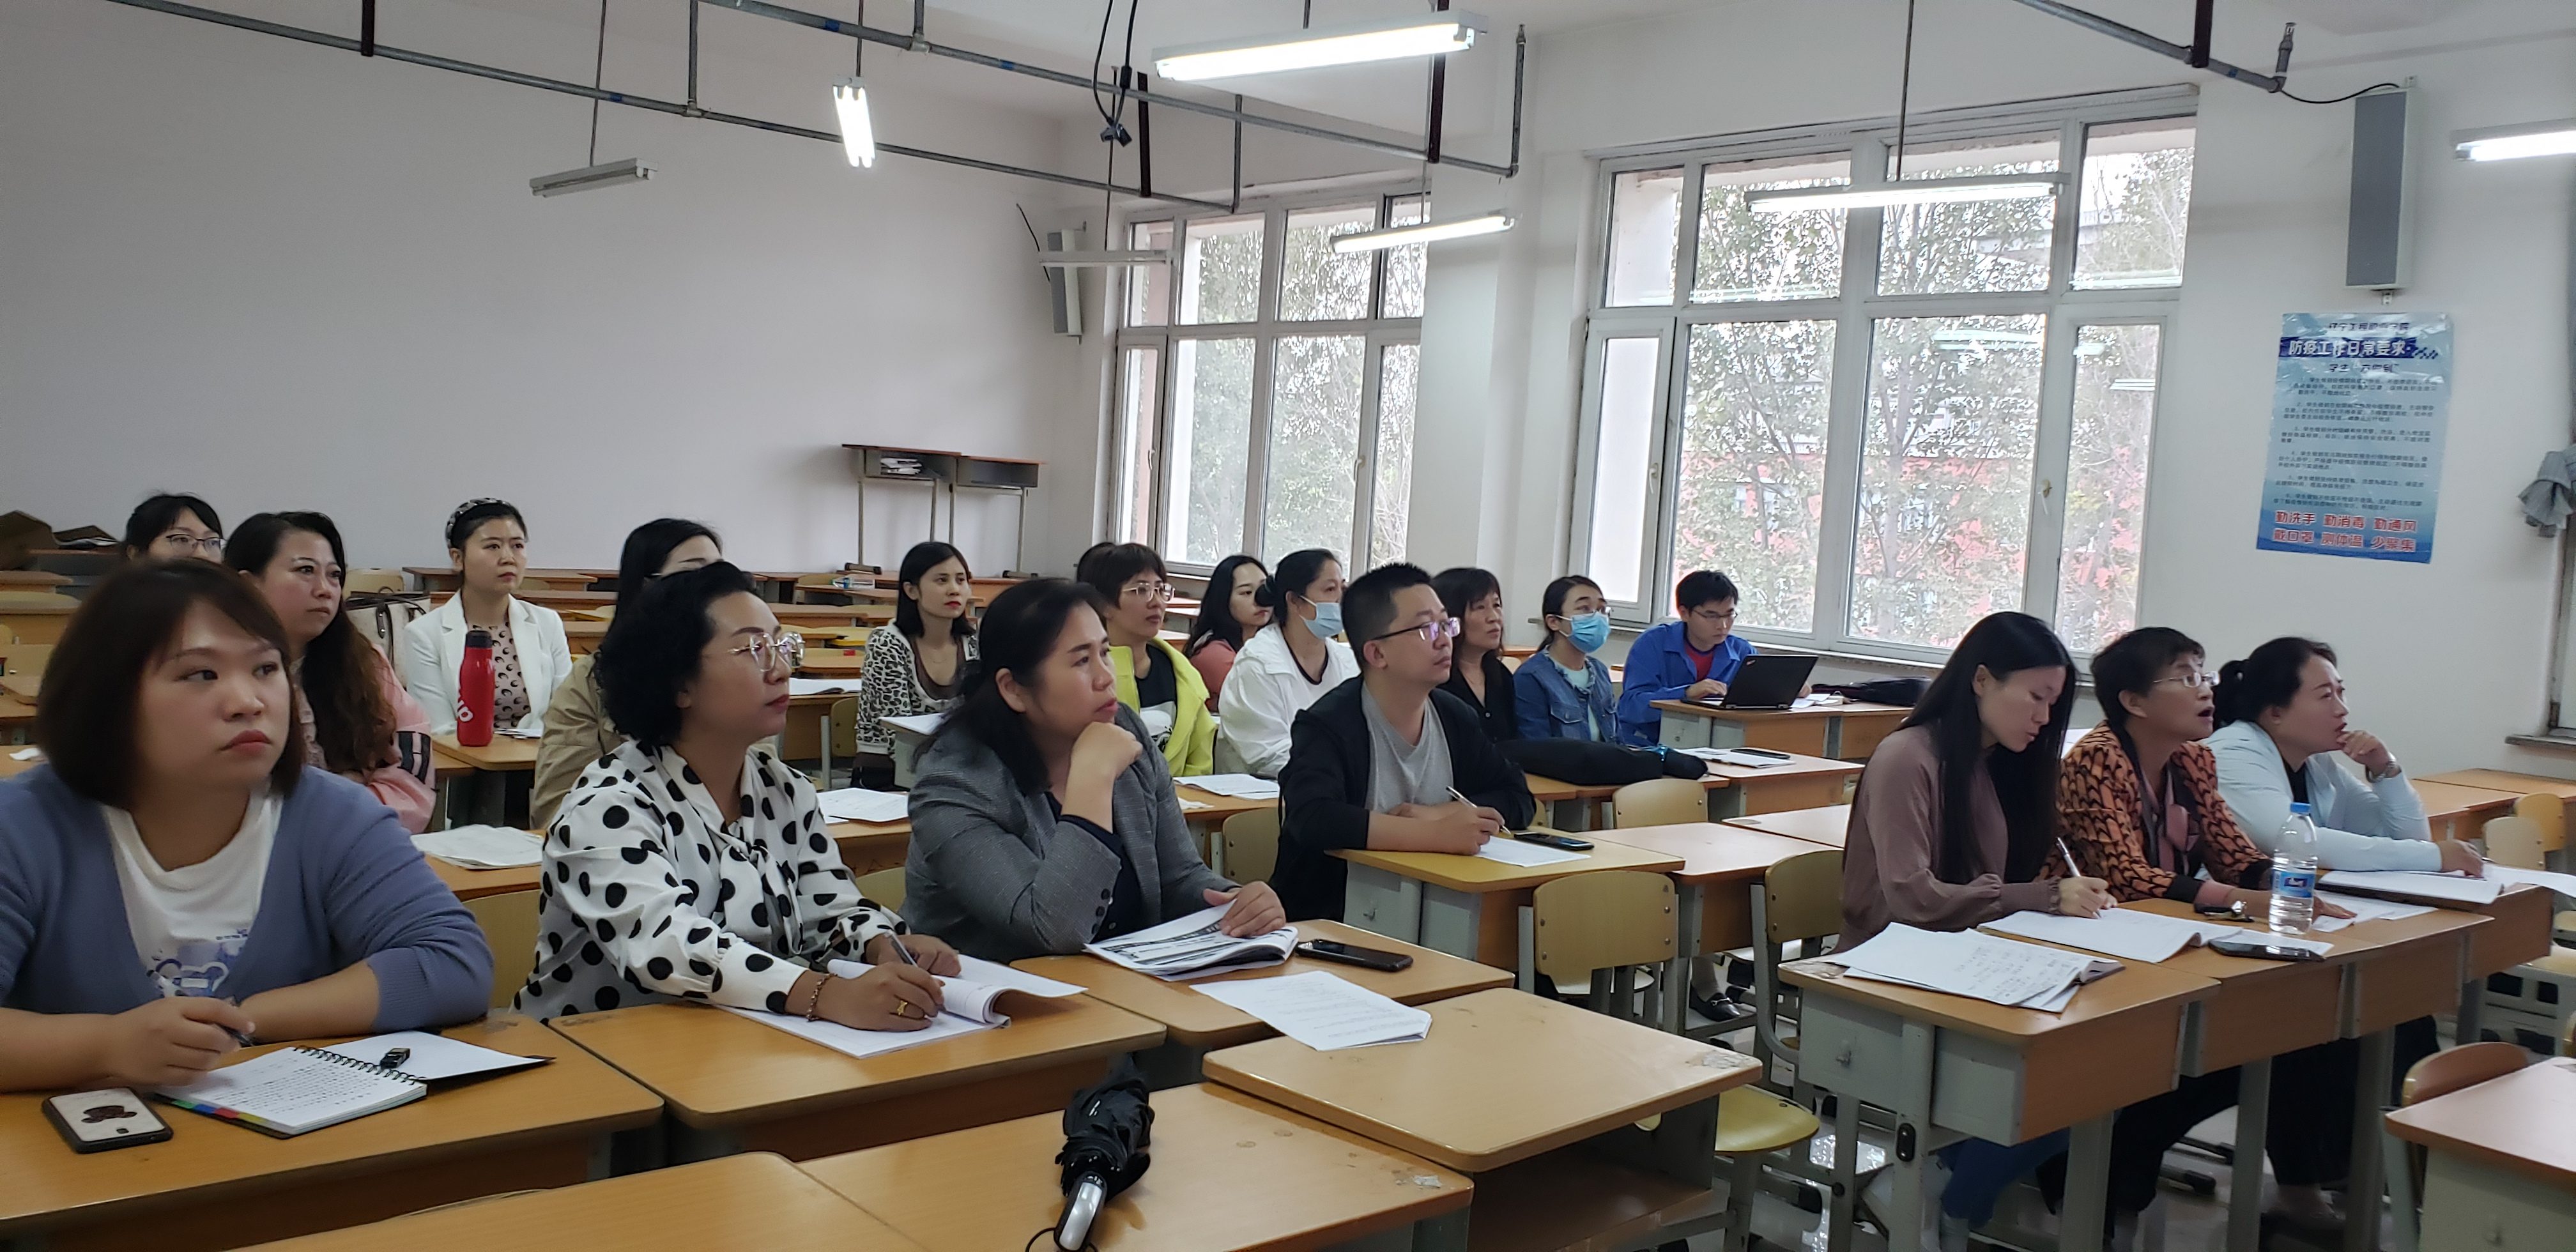 熱烈慶祝我院基礎部吳瓊、孫小琳、王詩淇三位老師 在遼寧省信息化教學大賽上獲得佳績